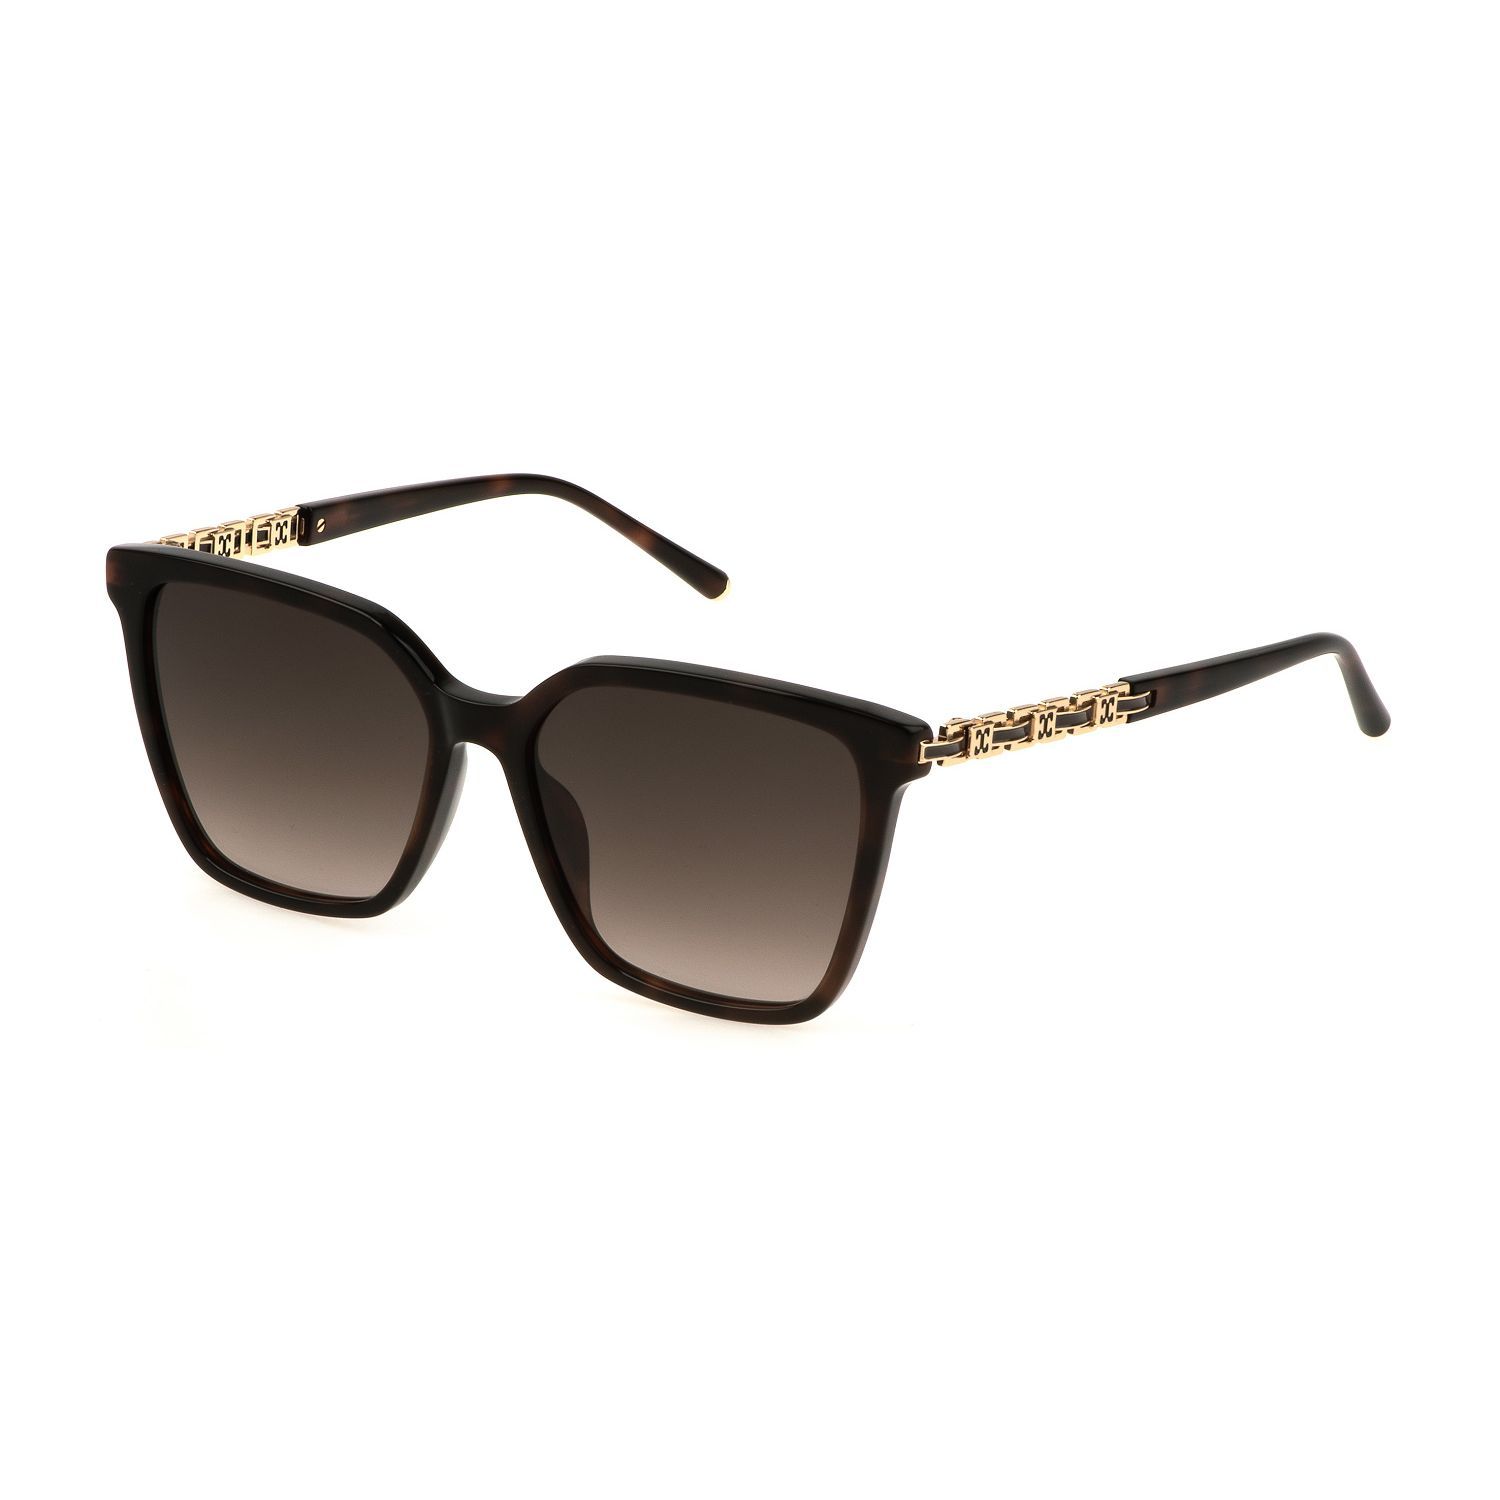 SESD96 Square Sunglasses 0752 - size 54